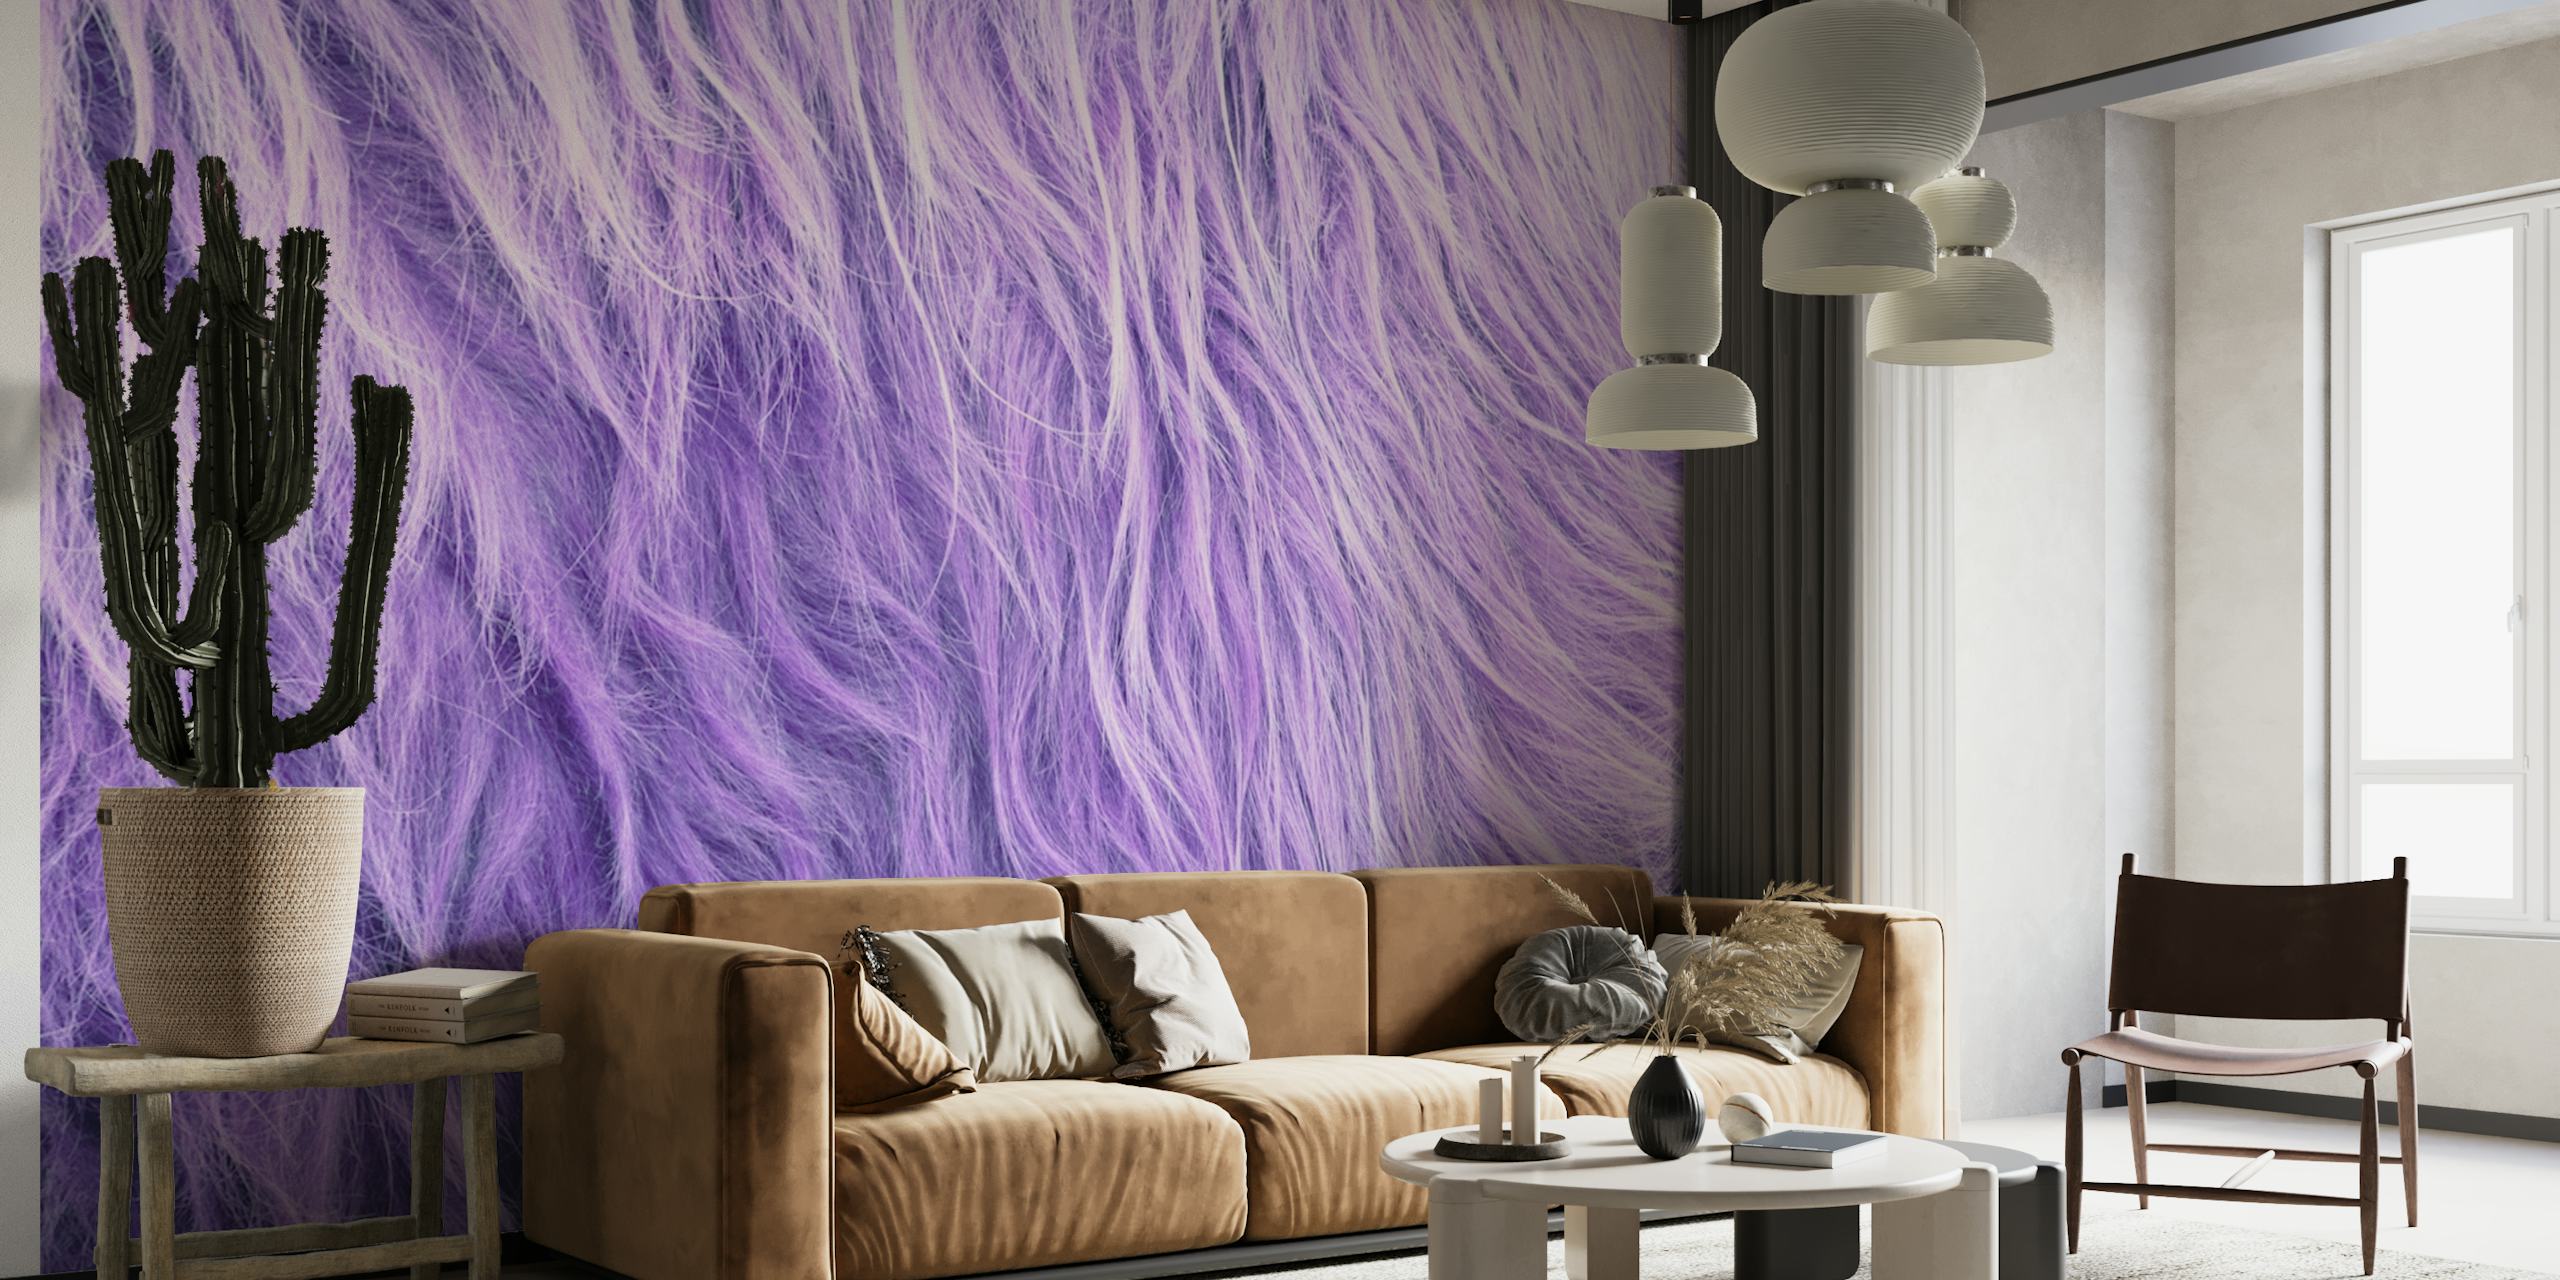 Mural de parede de pele sintética roxa texturizada que lembra pele de vaca das Terras Altas